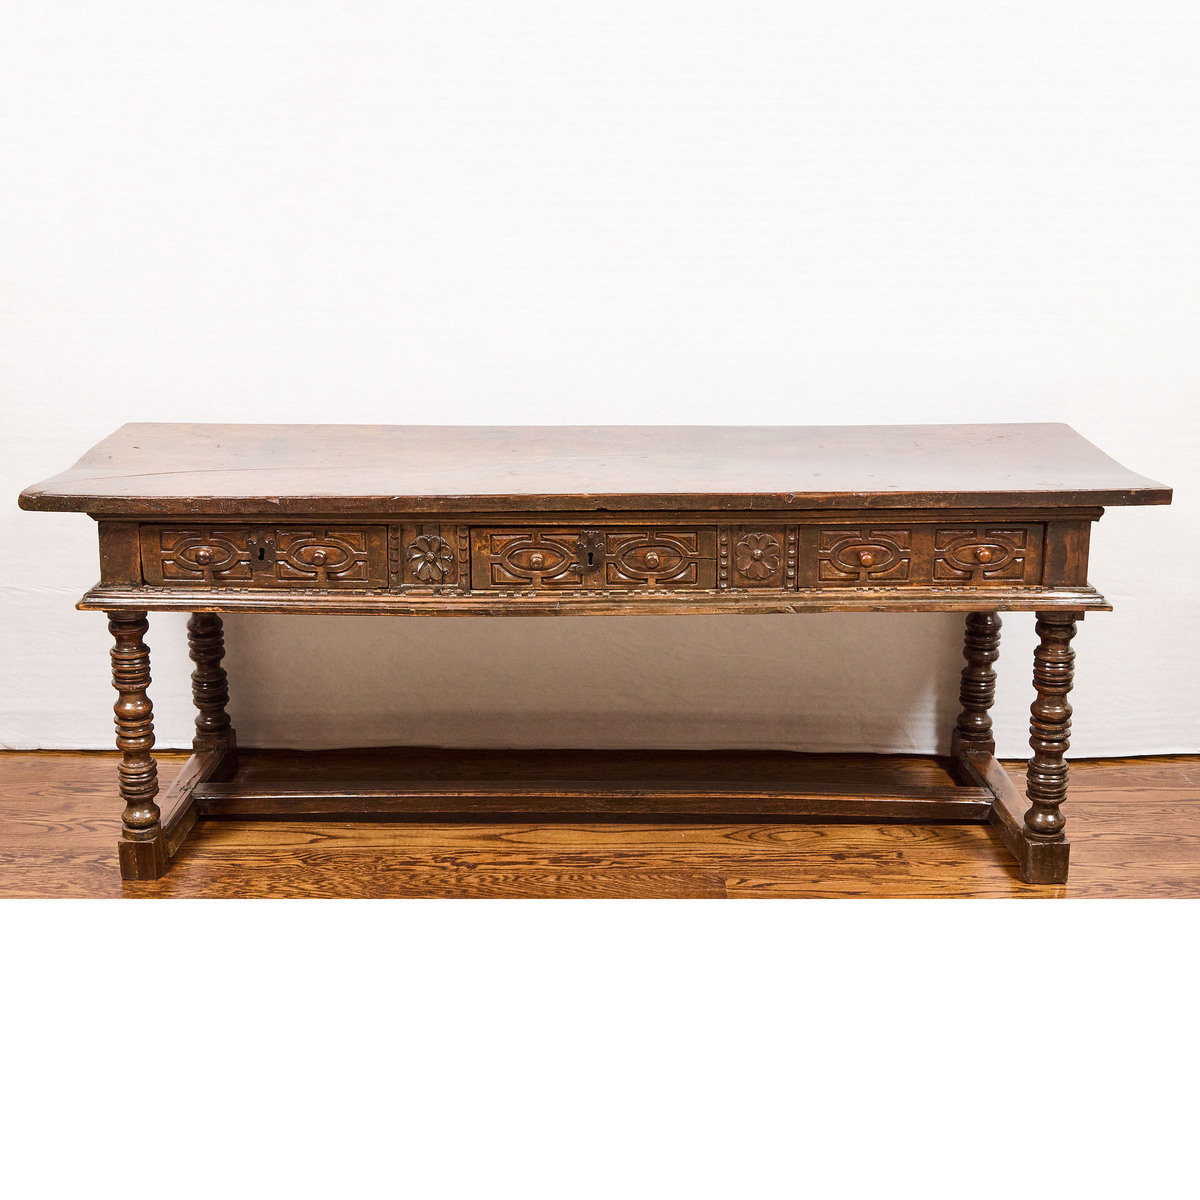 Elizabethan Walnut Refectory Table, c.1600, 34.75 x 91.5 x 30.75 in — 88.3 x 232.4 x 78.1 cm